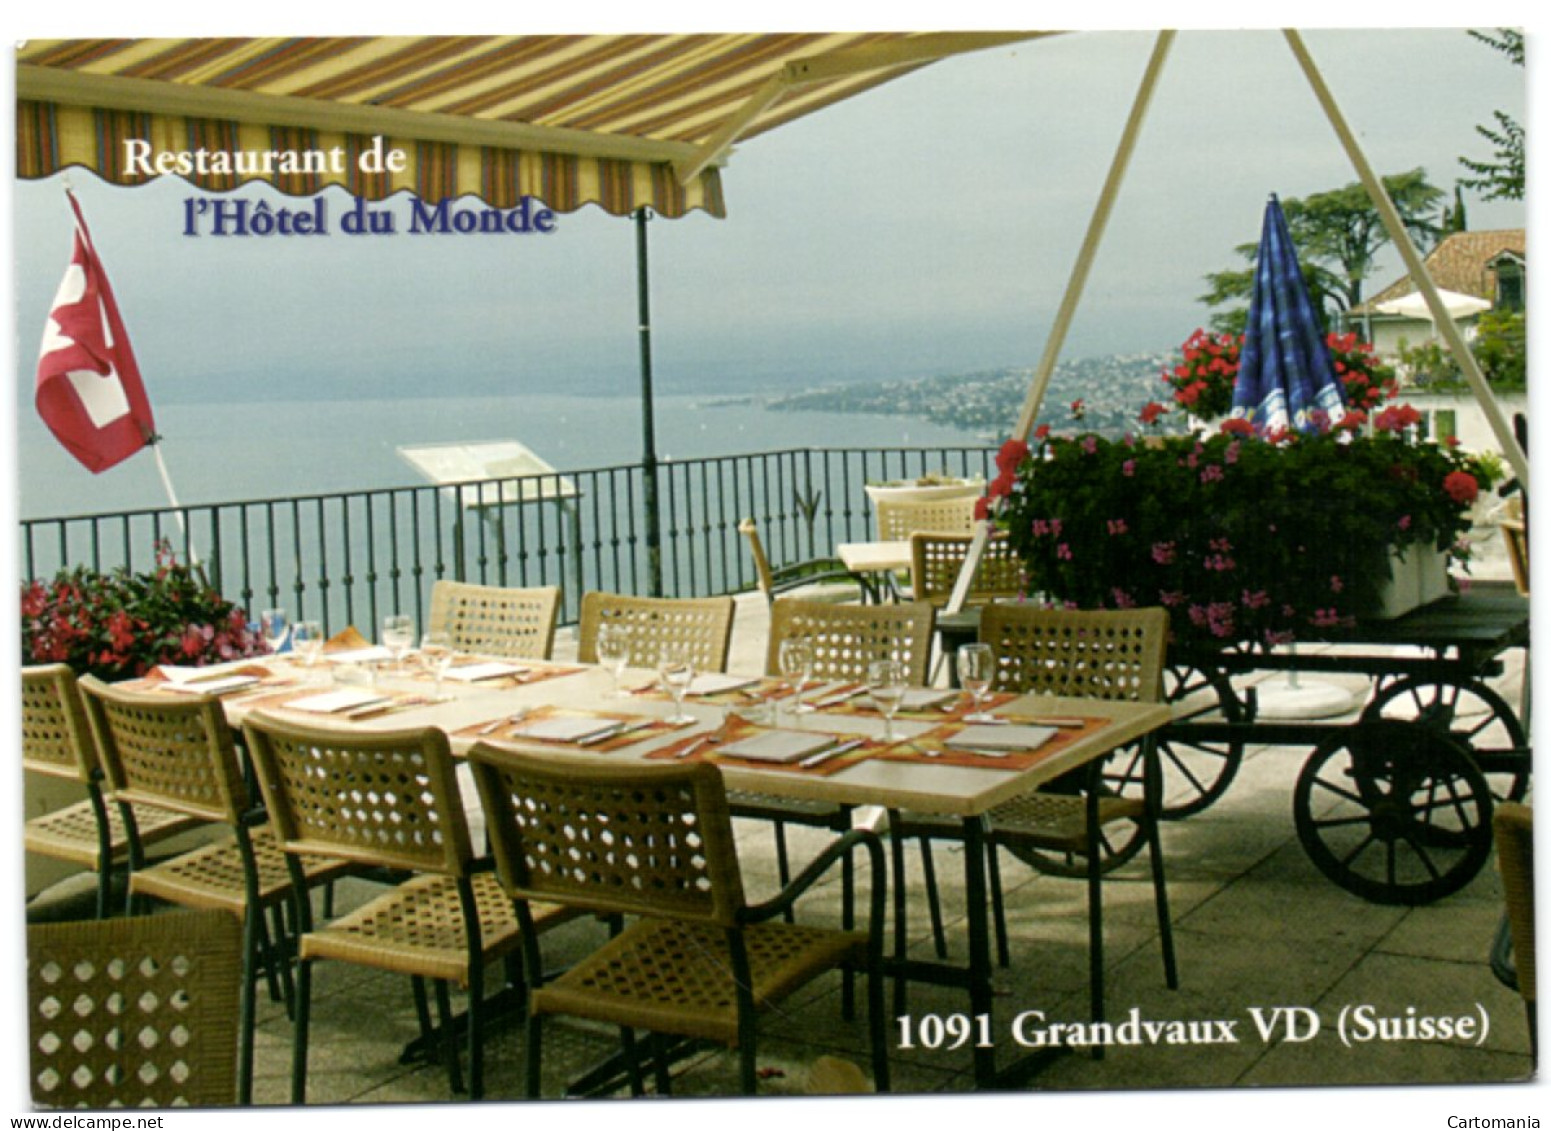 Grandvaux VD - Restaurant De L'Hôtel Du Monde - Grandvaux